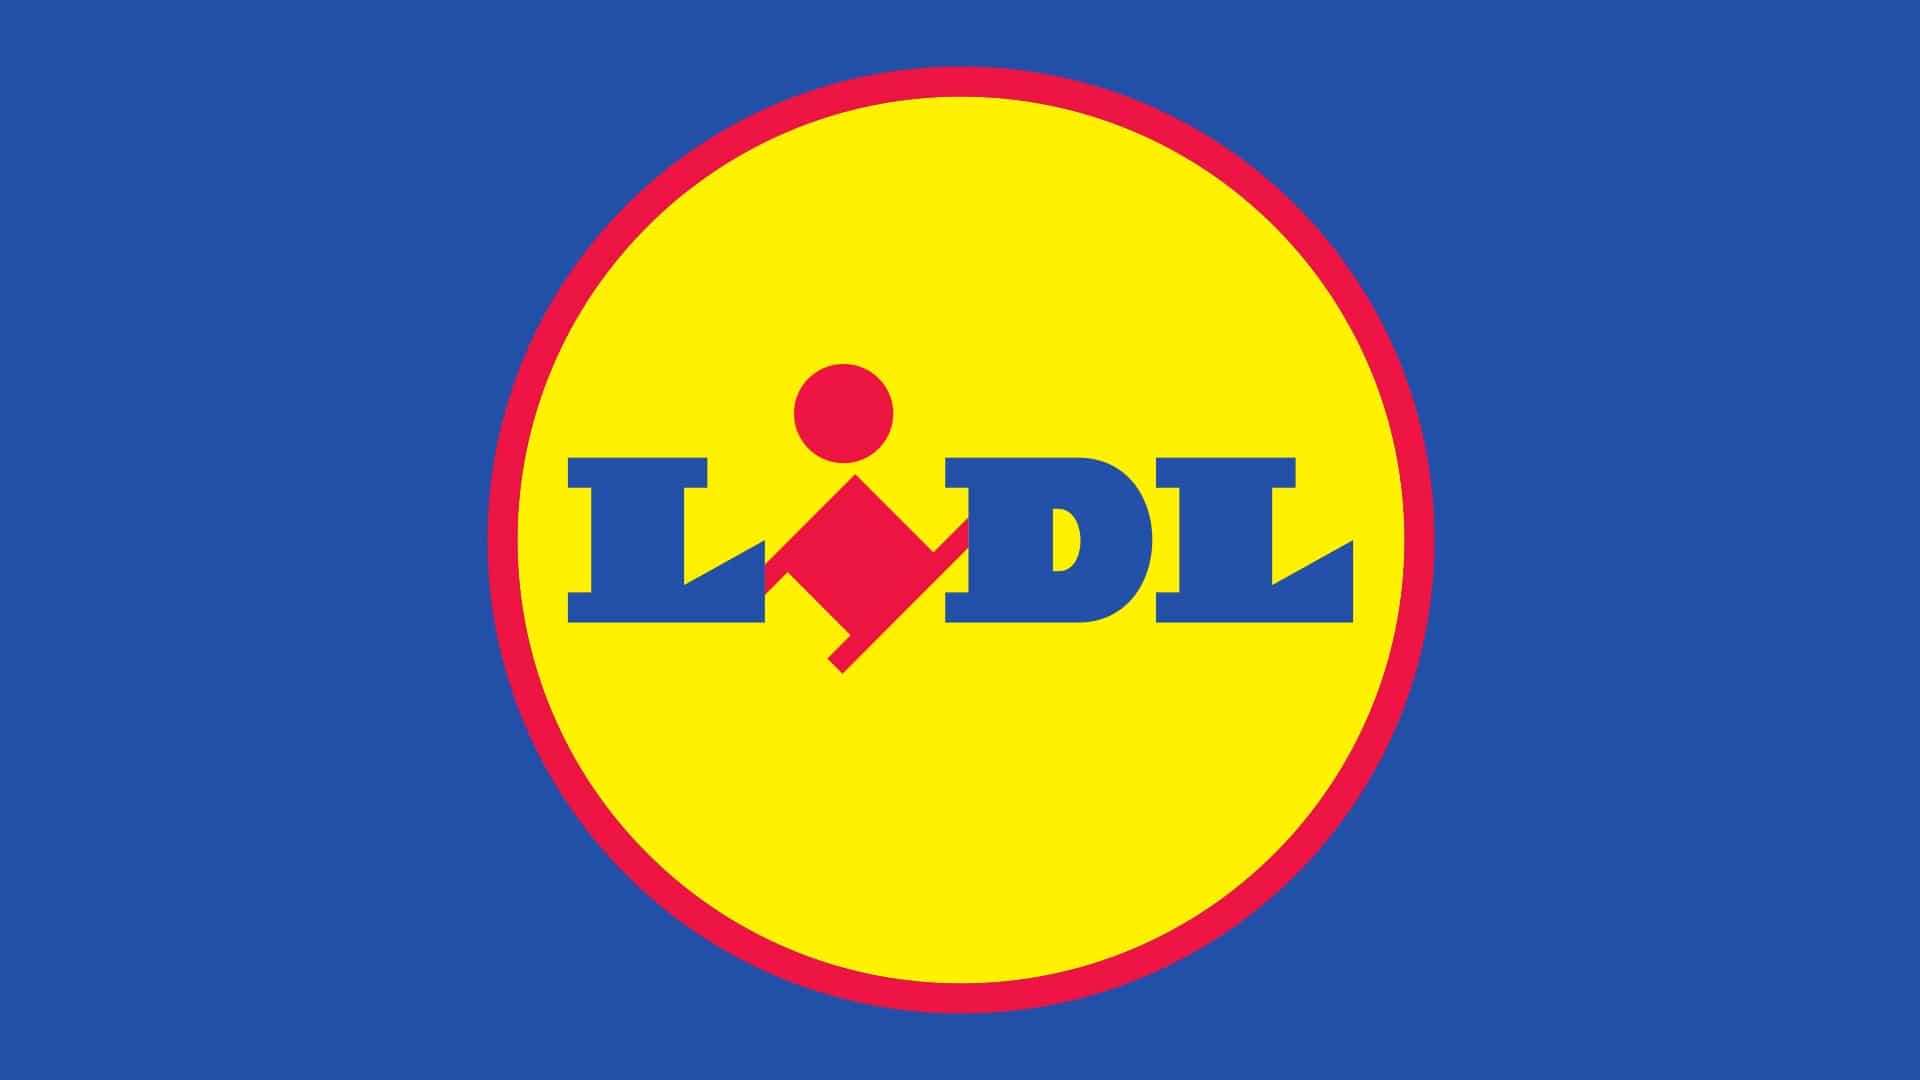 Lidl logo : histoire, signification et évolution, symbole